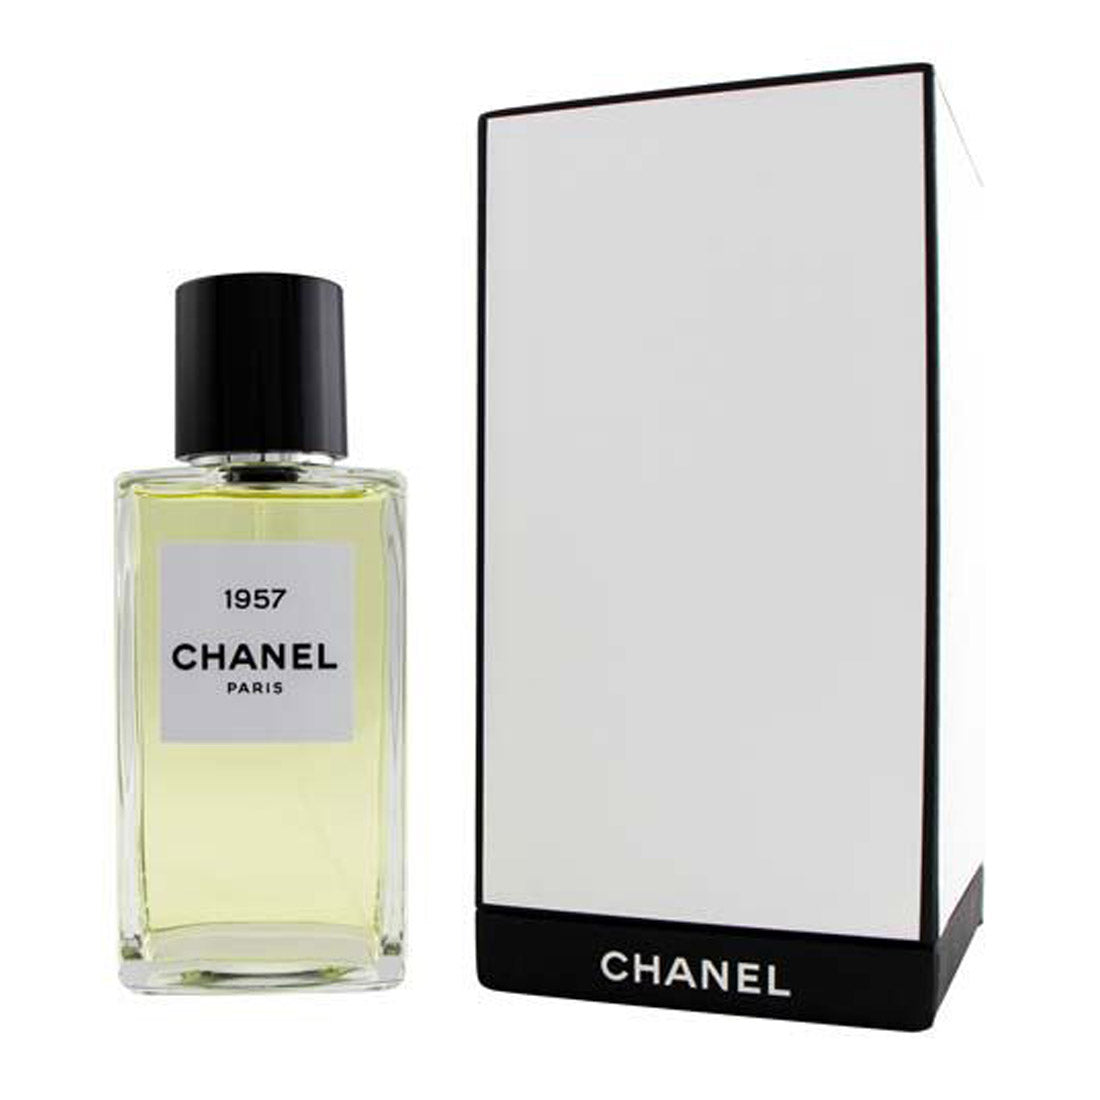 Chanel 1957 Les Exclusifs De Chanel Eau de Parfum